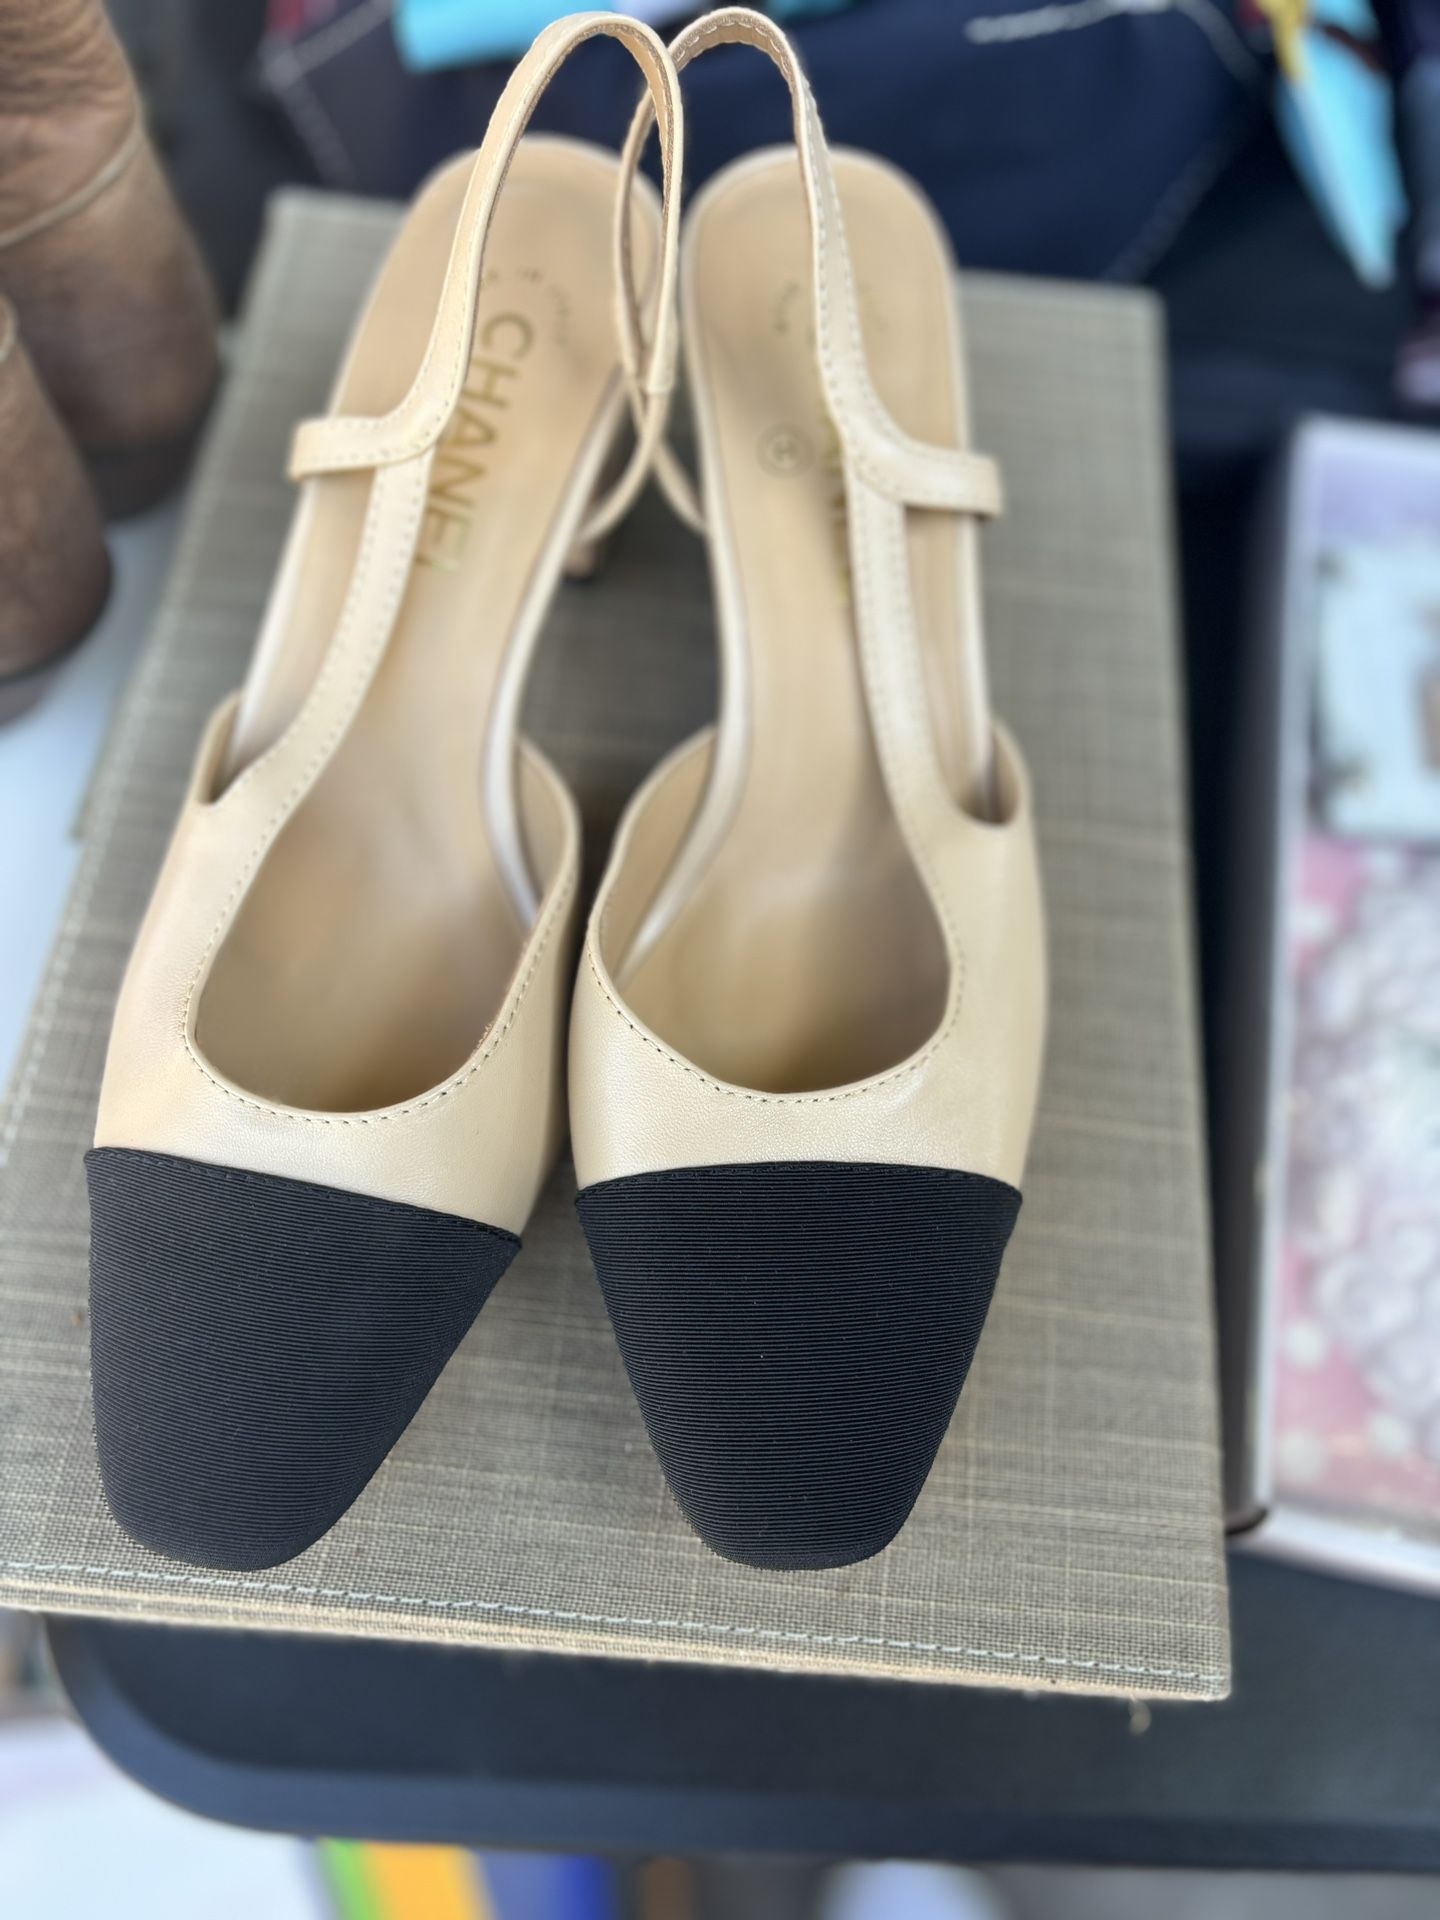 original heels